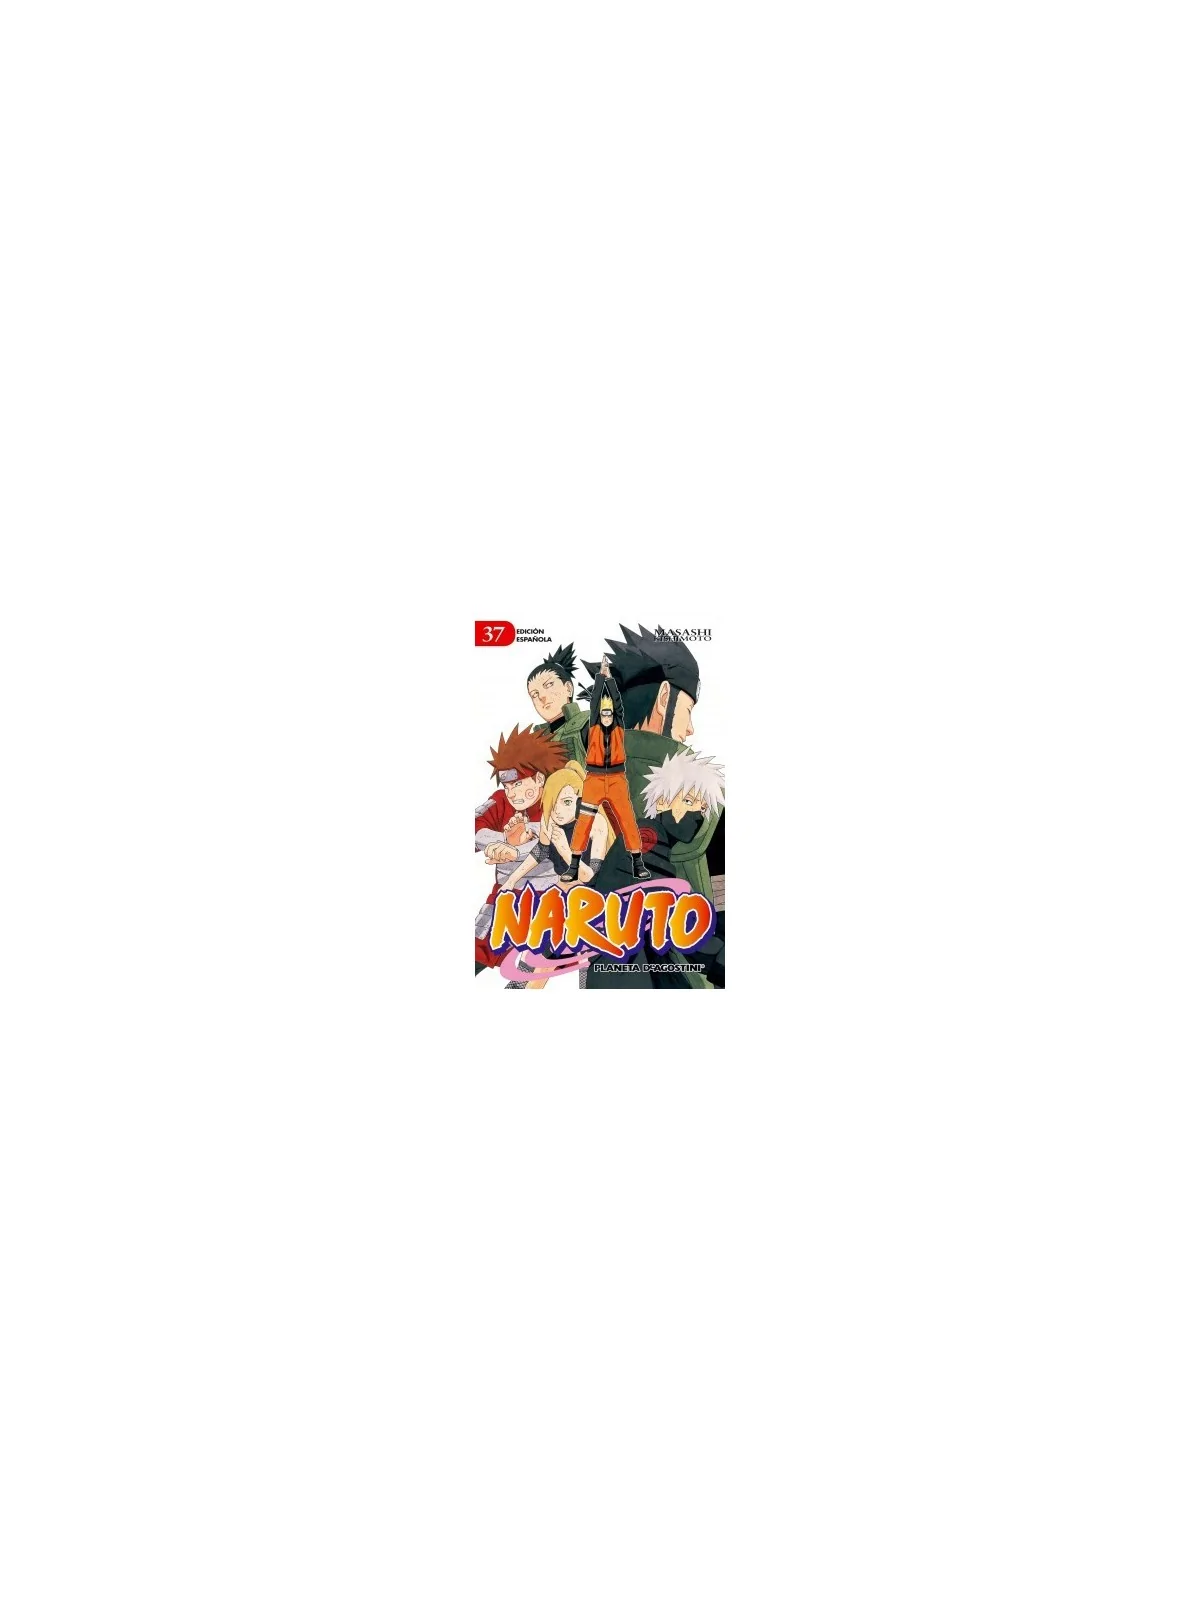 Comprar Naruto 37 barato al mejor precio 7,12 € de Planeta Comic